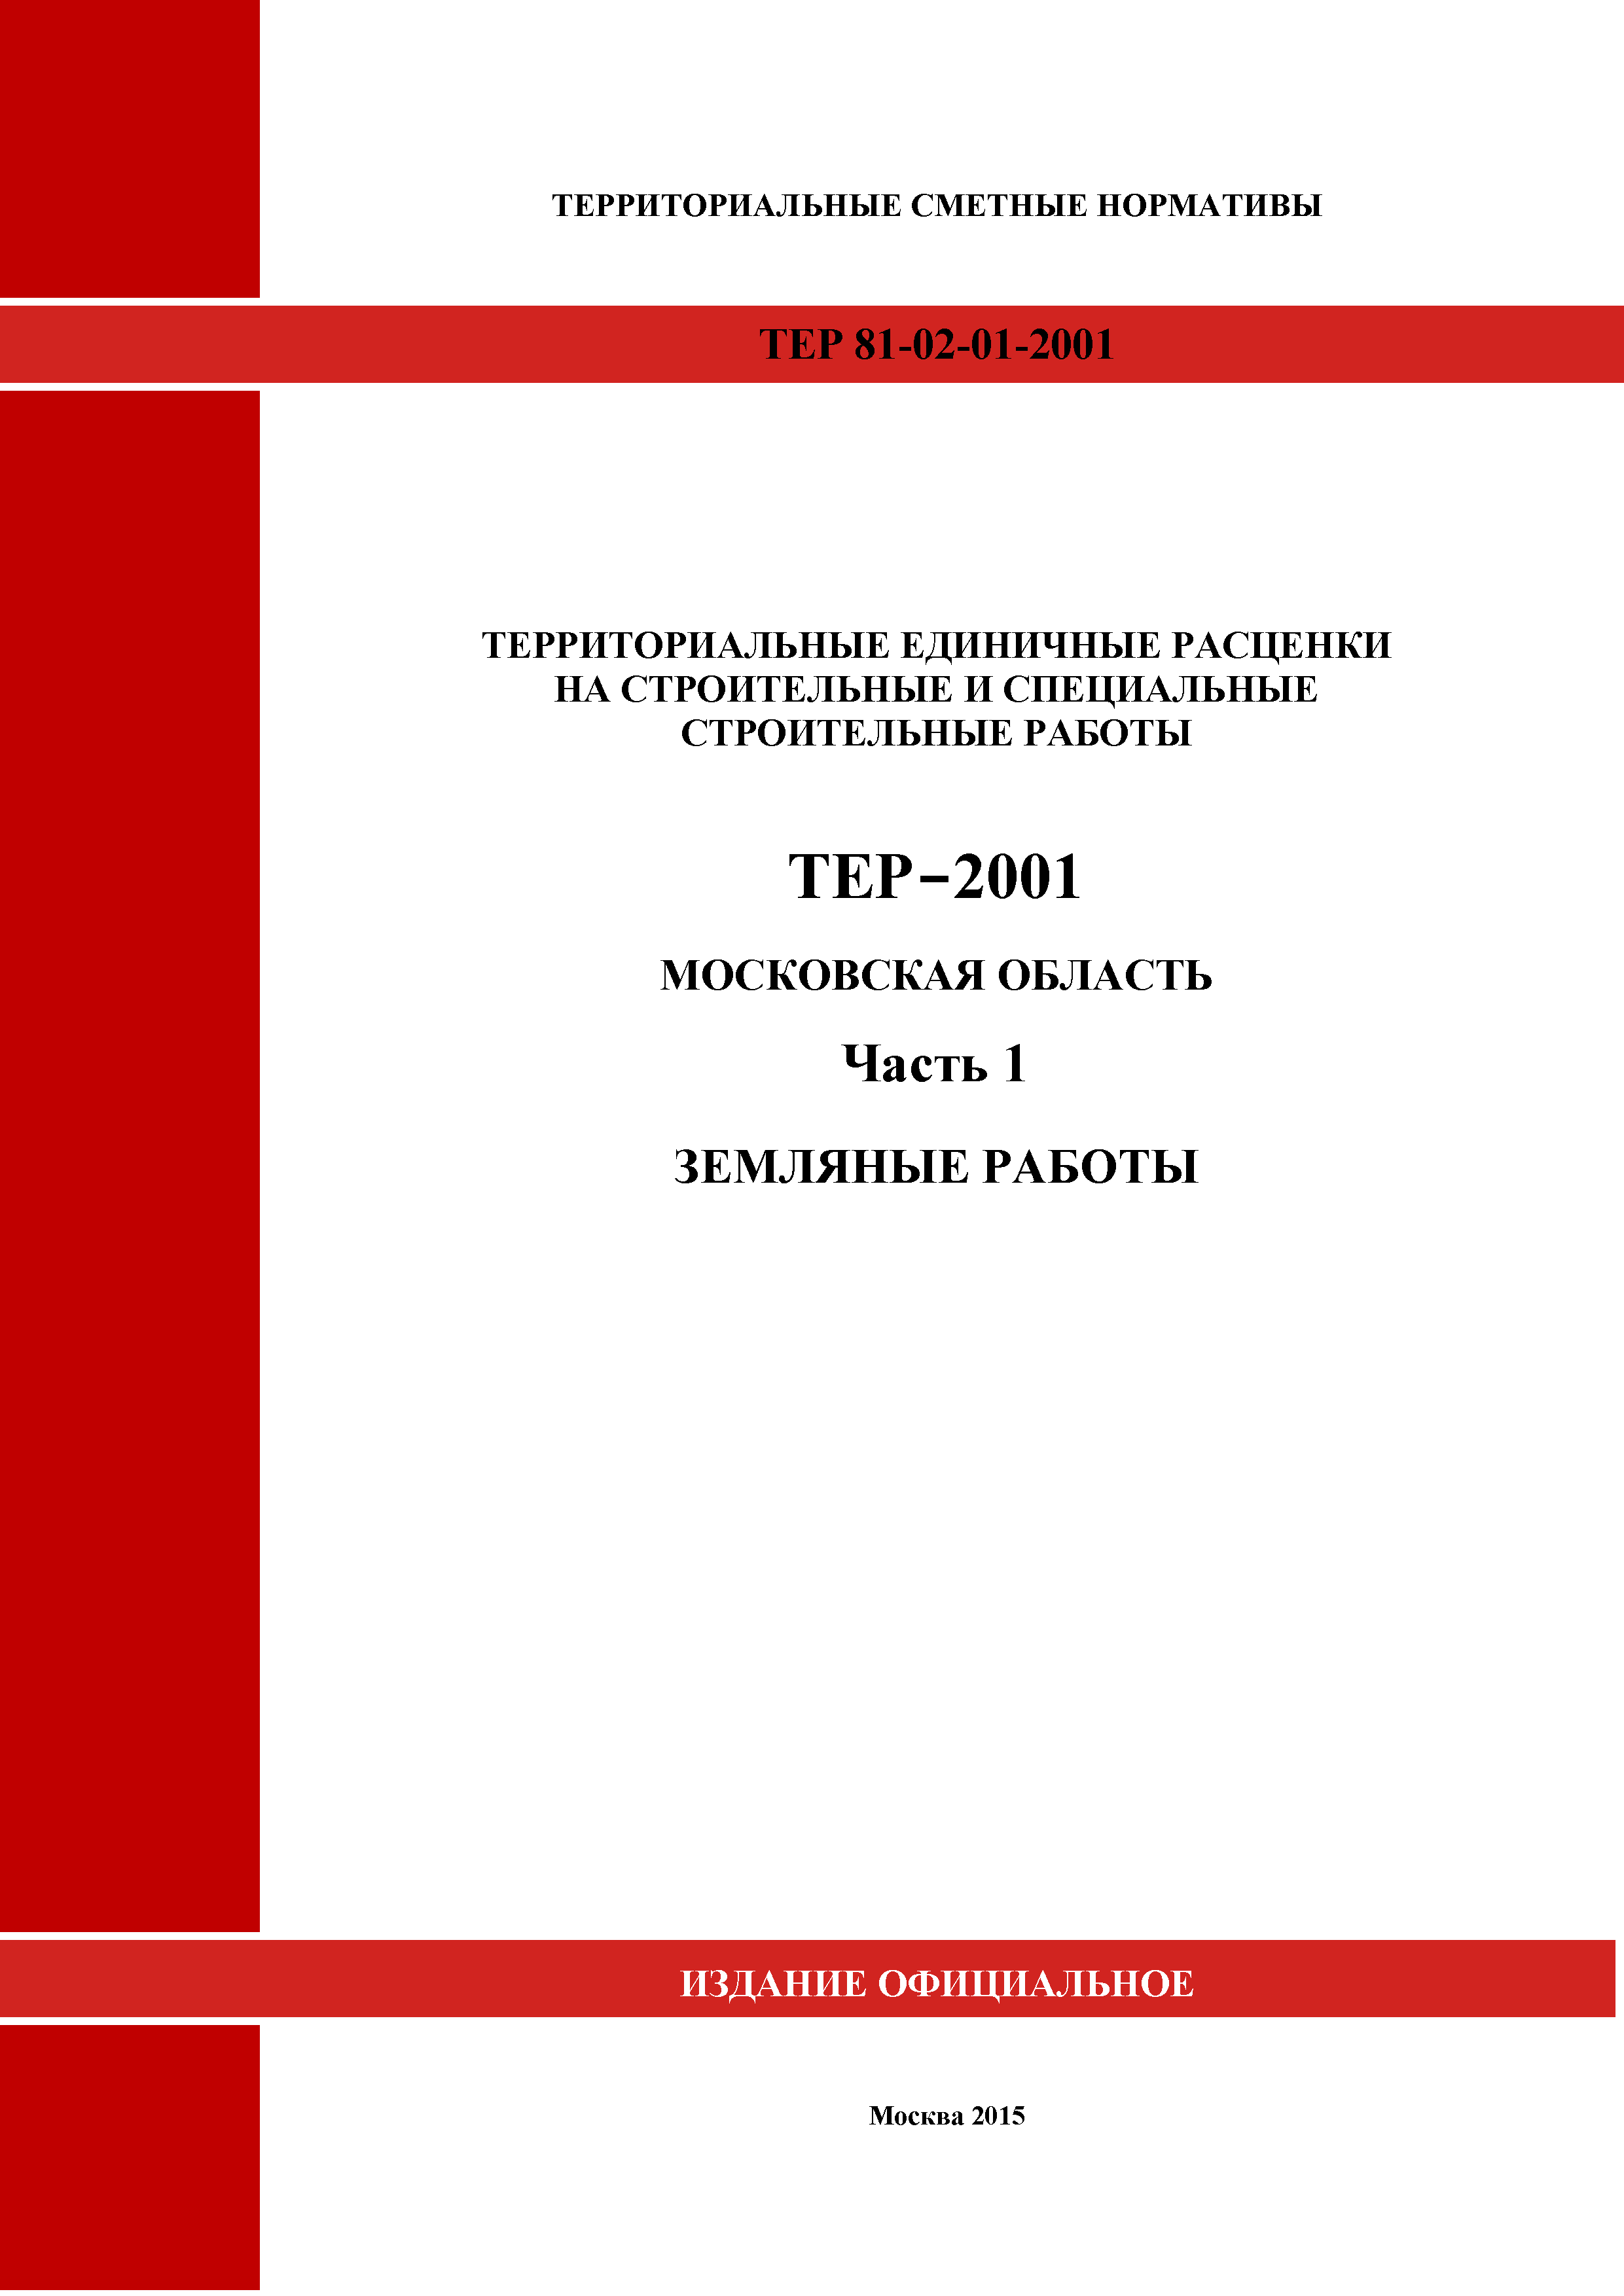 ТЕР 1-2001 Московской области